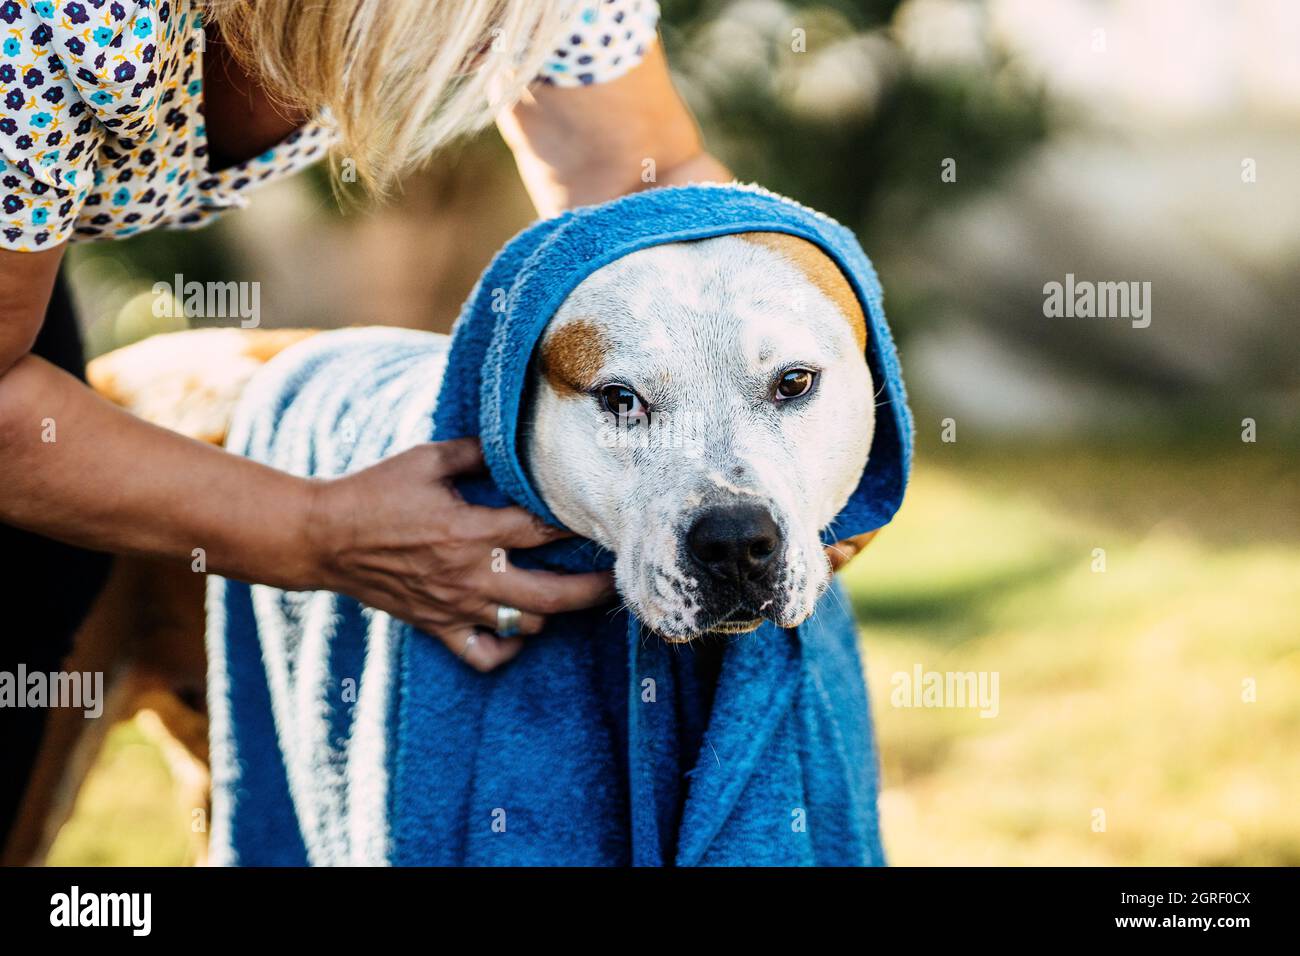 Frau wickelte und trocknete einen Hund mit einem blauen Handtuch in einem Garten Stockfoto